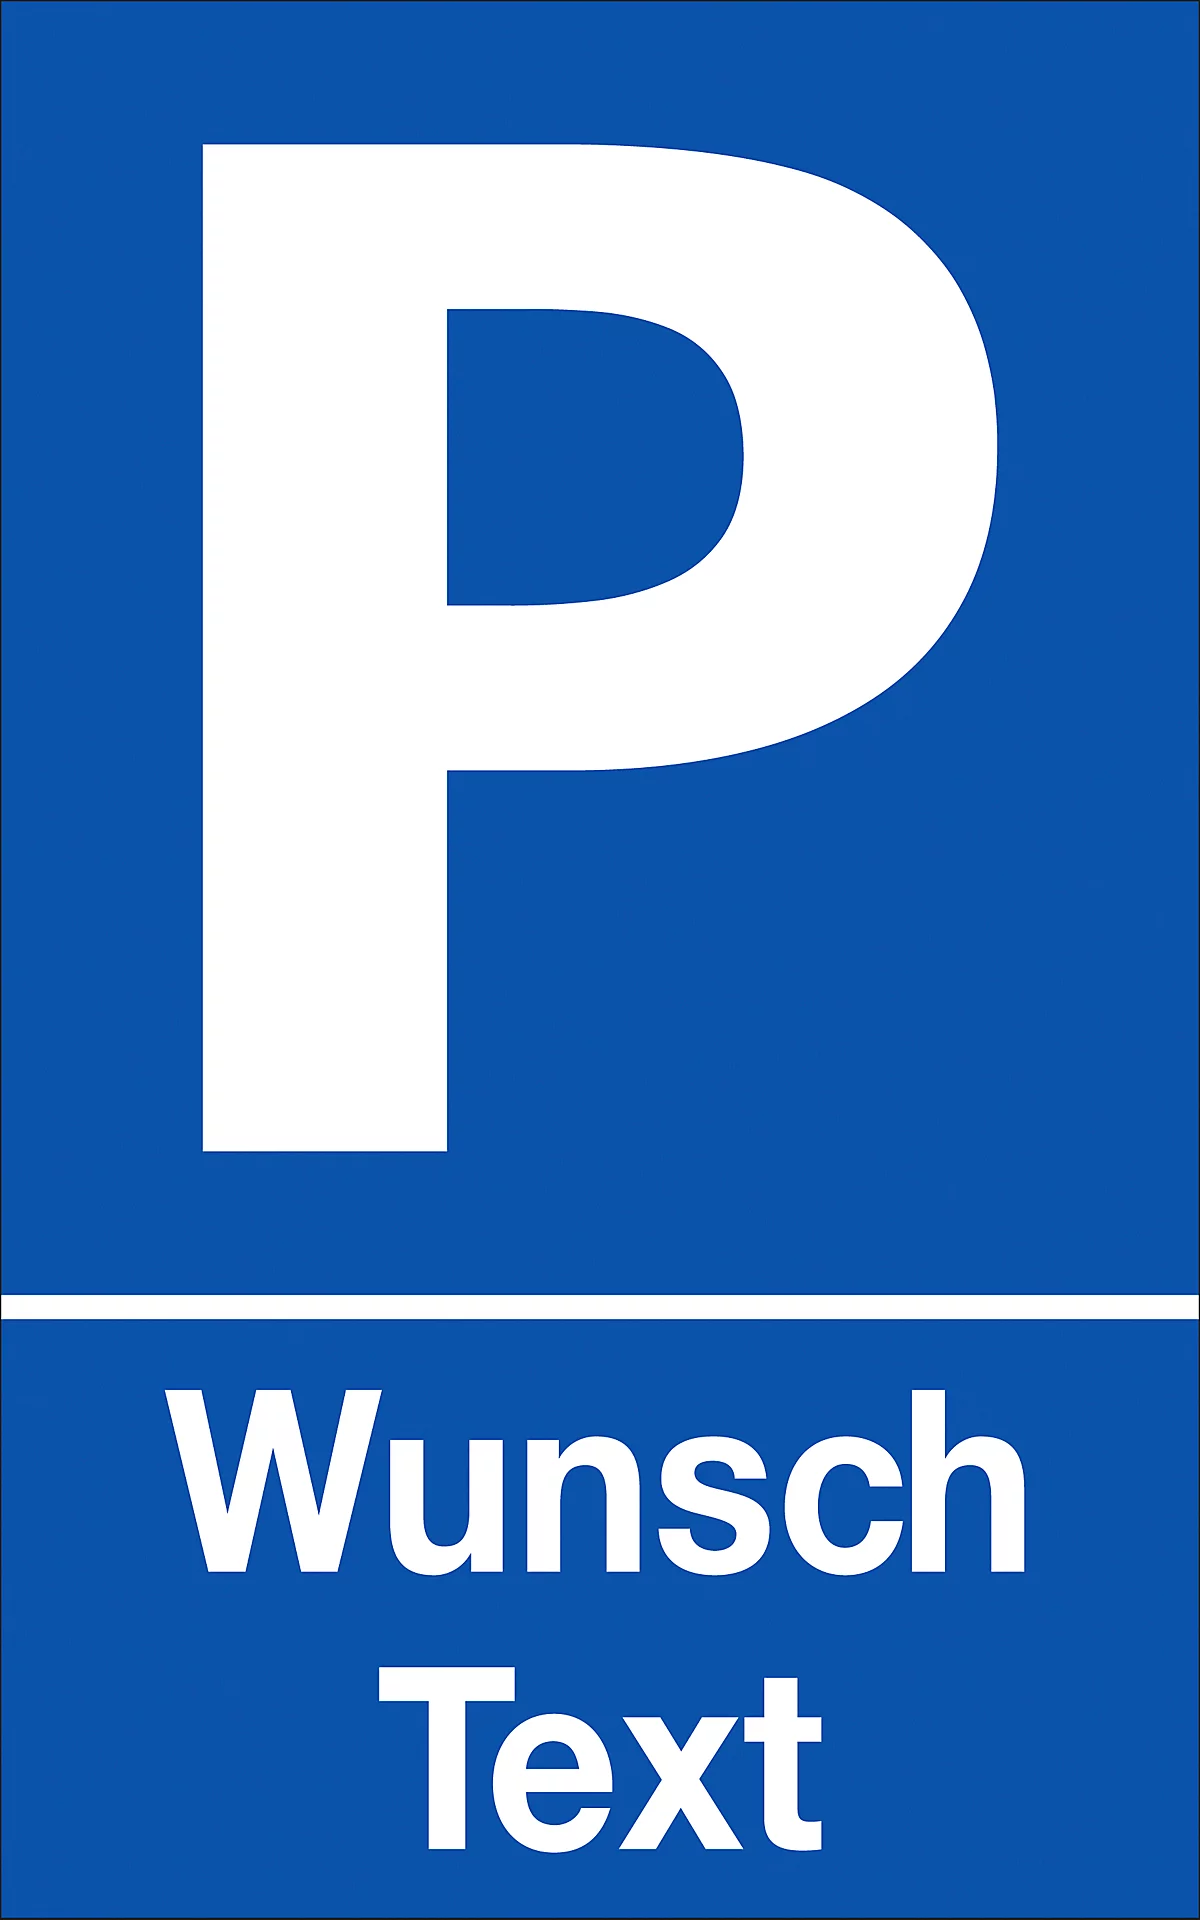 Parkplatzschild mit Text nach Wunsch (Alu-Dibond)